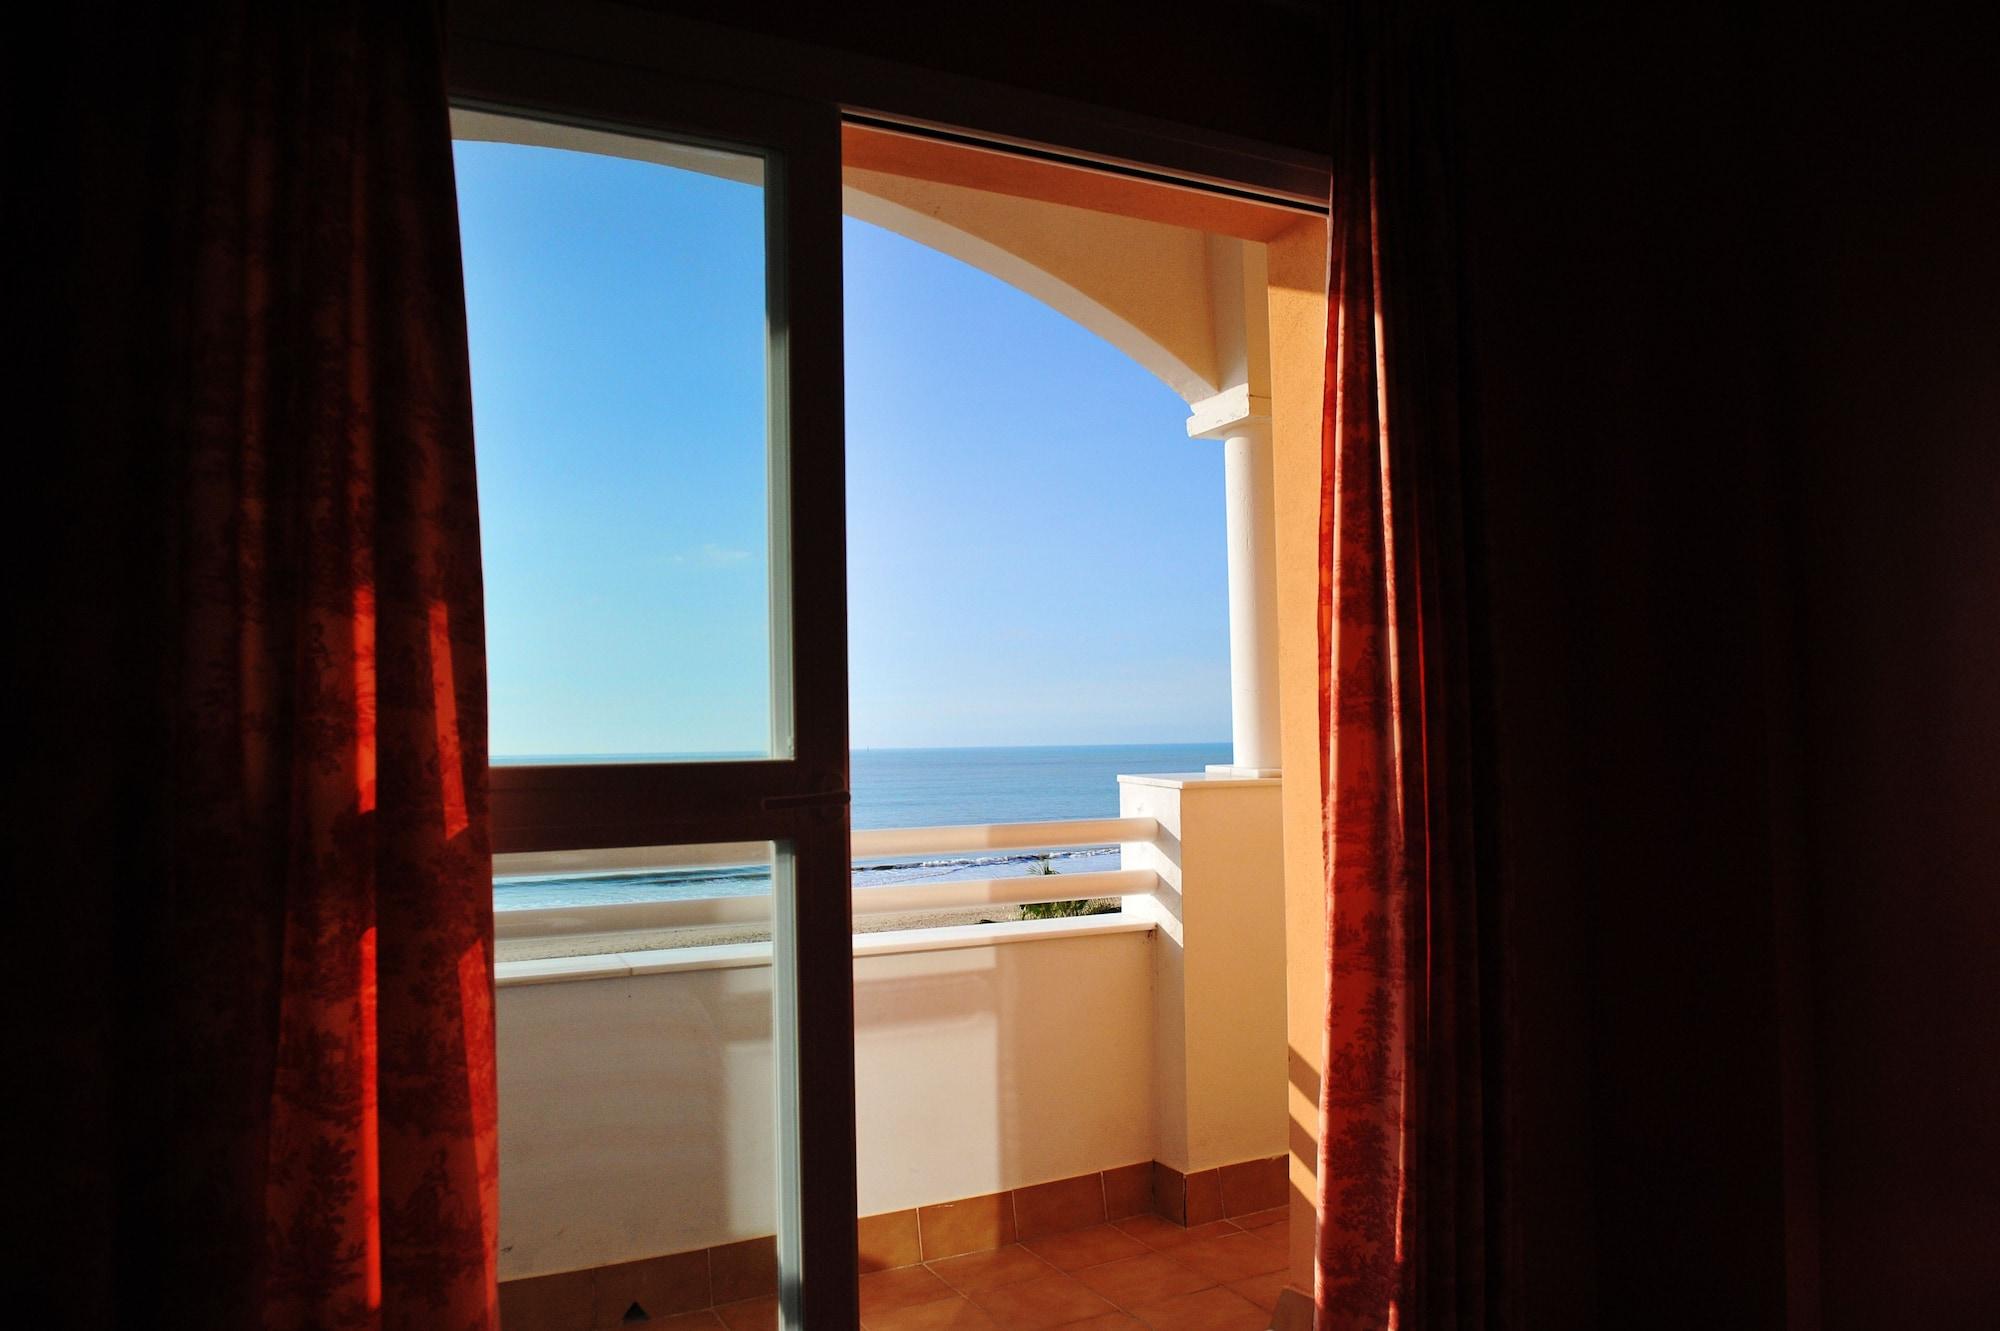 Hotel Vertice Chipiona Mar Extérieur photo